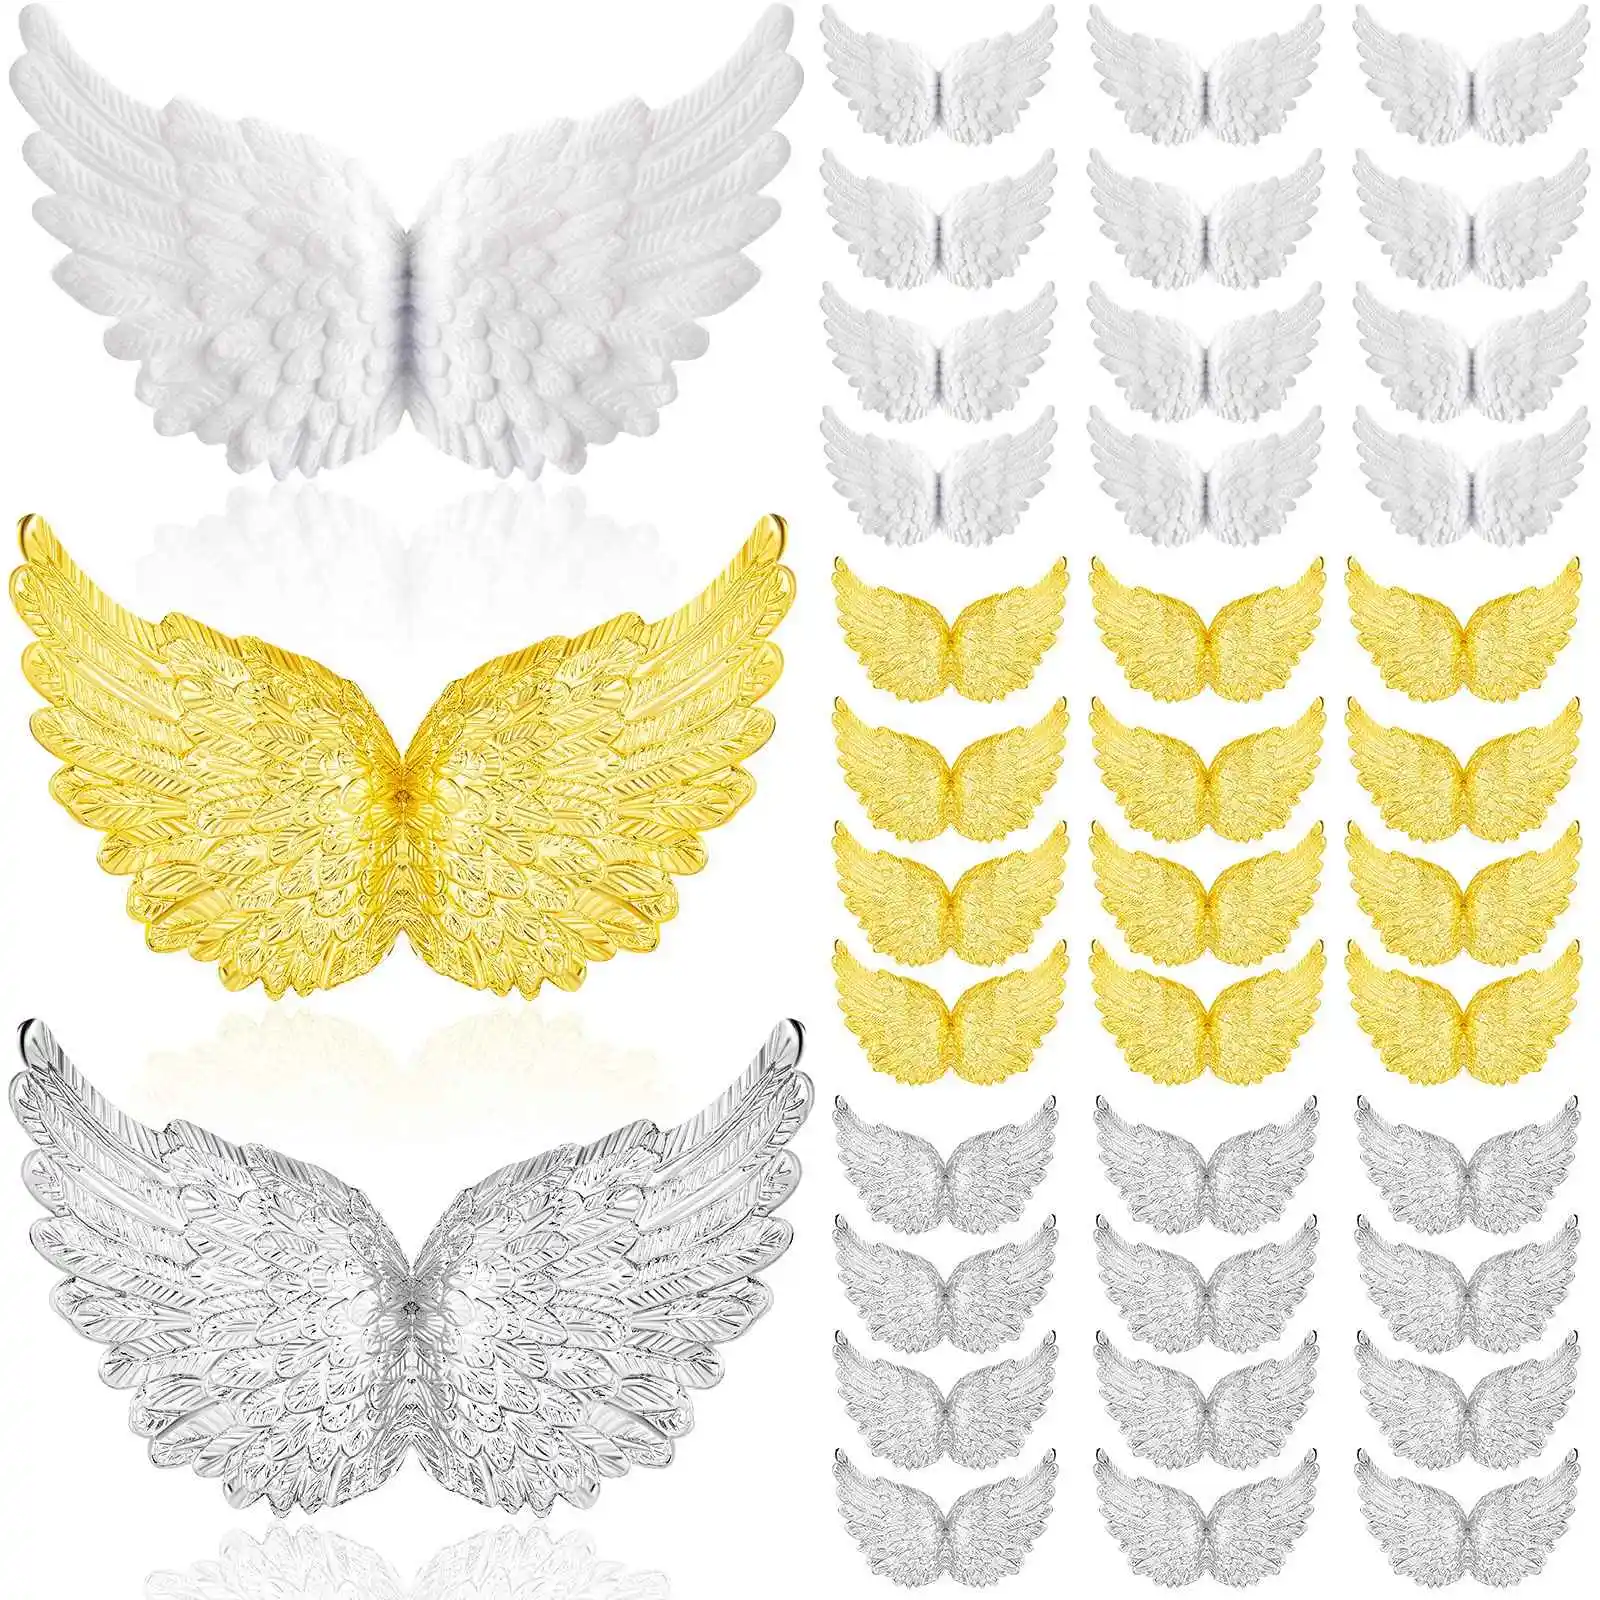 

Пластиковые крылья Ангела 36 шт. для рукоделия, мини 3D зеркальные орнаменты, для украшения искусств, рукоделия и свадьбы